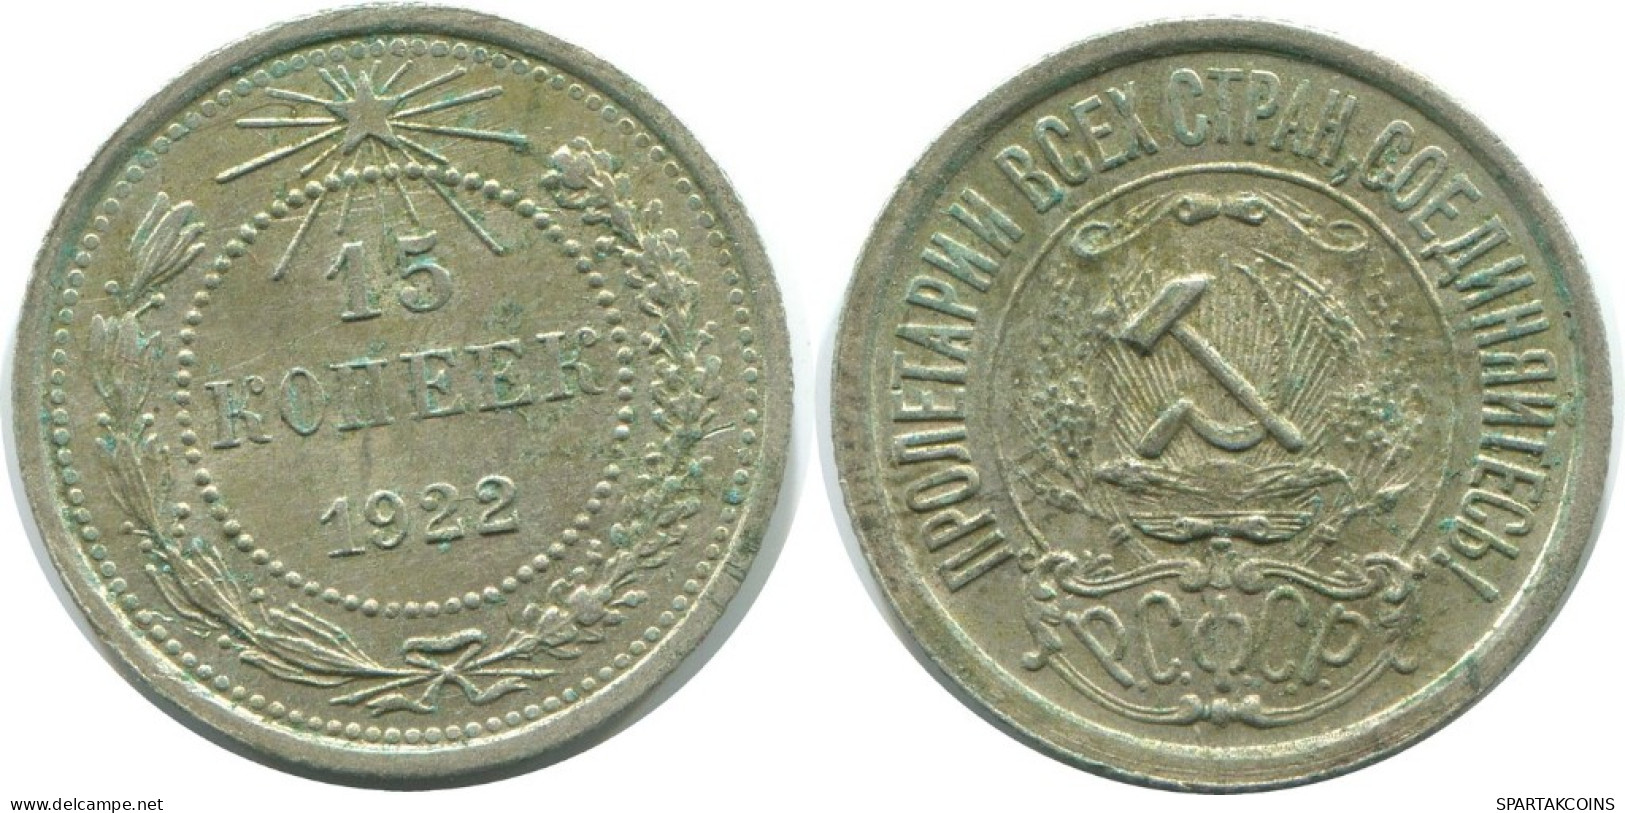 15 KOPEKS 1922 RUSSIA RSFSR SILVER Coin HIGH GRADE #AF190.4.U.A - Russland